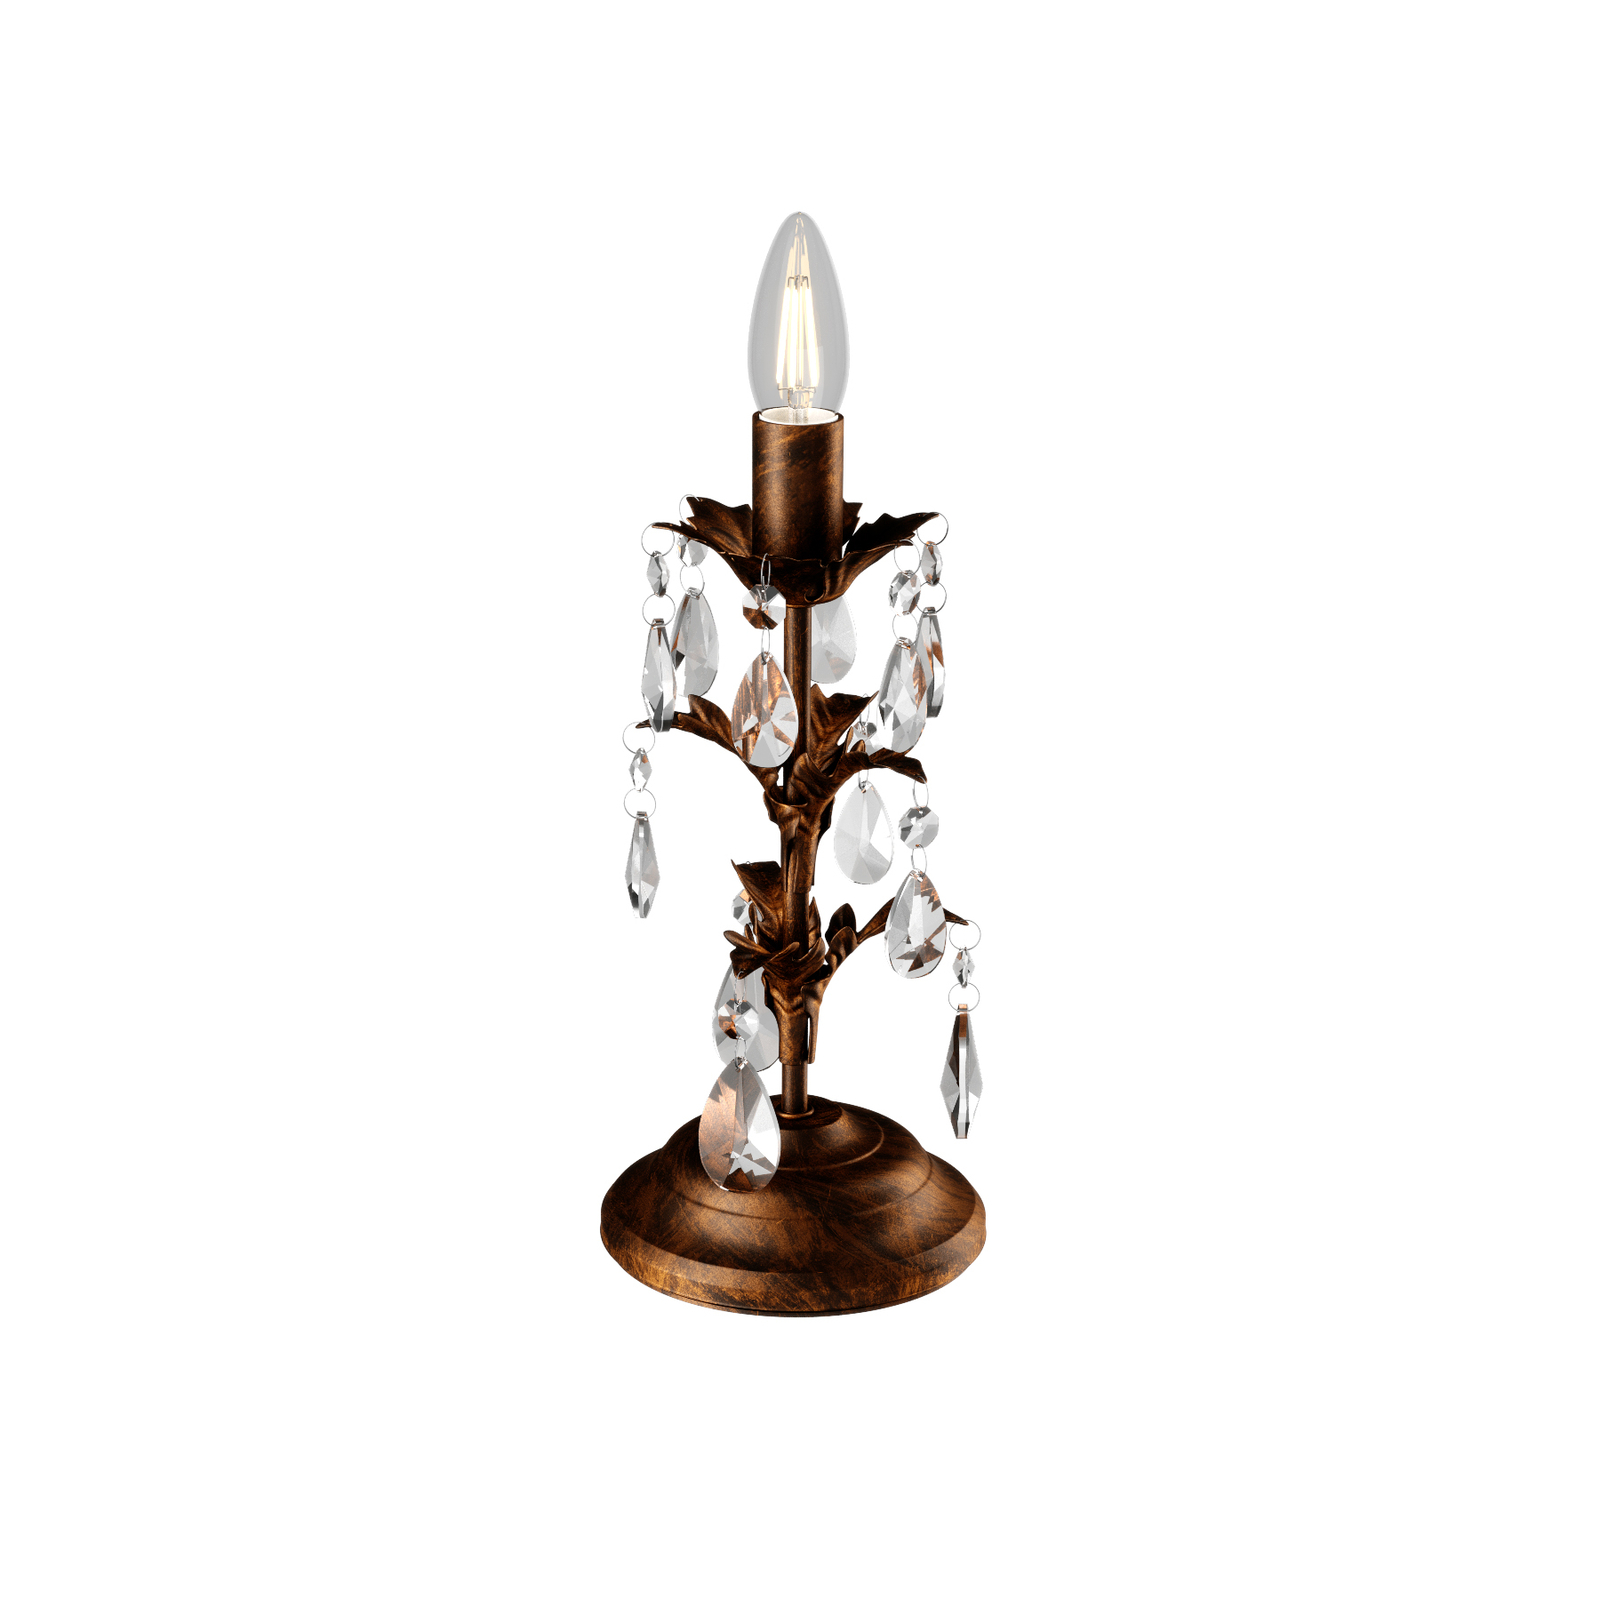 Tafellamp Teresa met kristallen, zonder kap